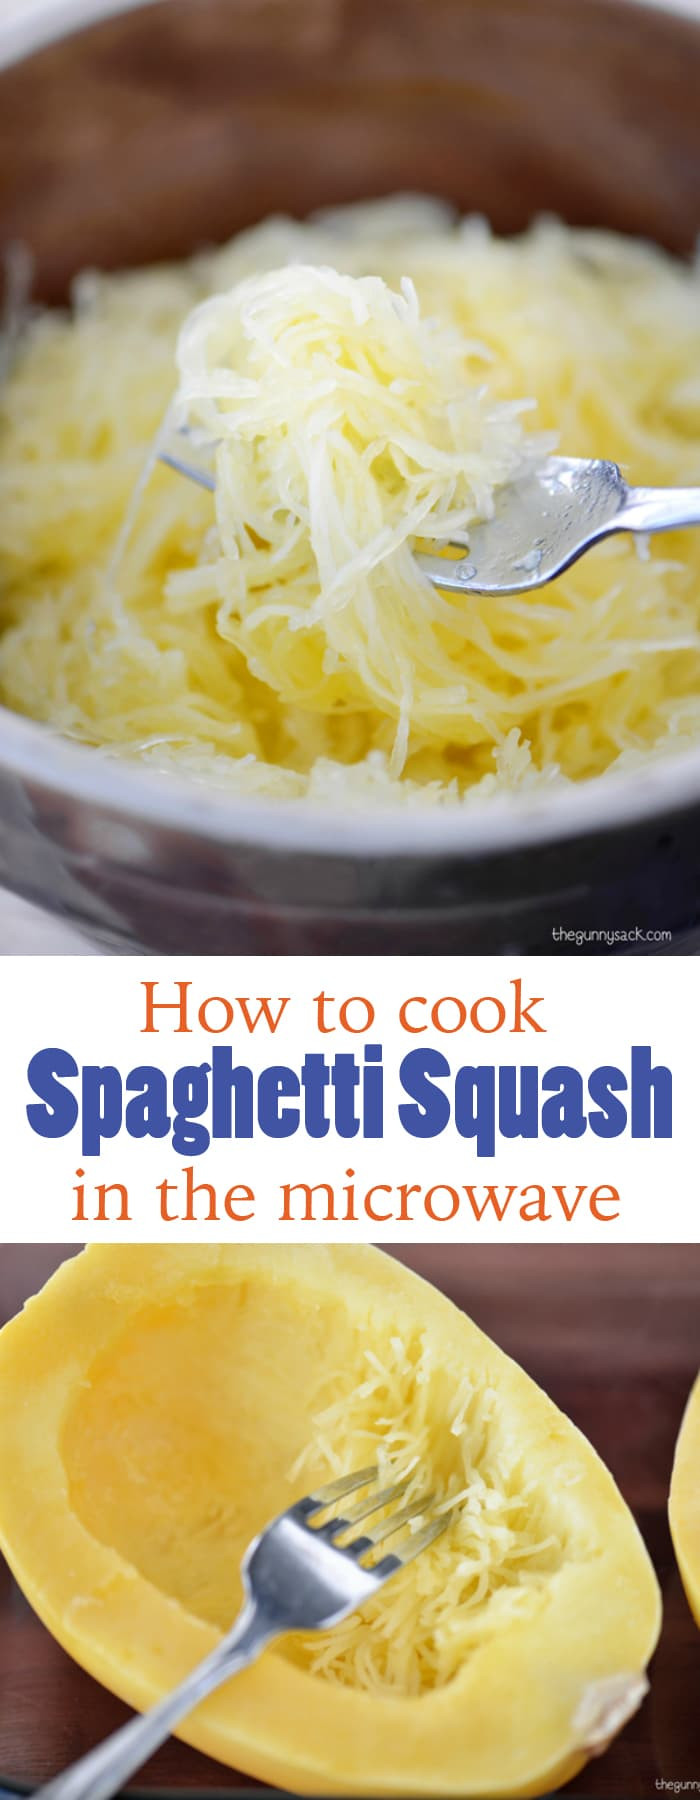 Spaghetti Squash Microwave
 Recipe For Spaghetti Squash With Meatballs